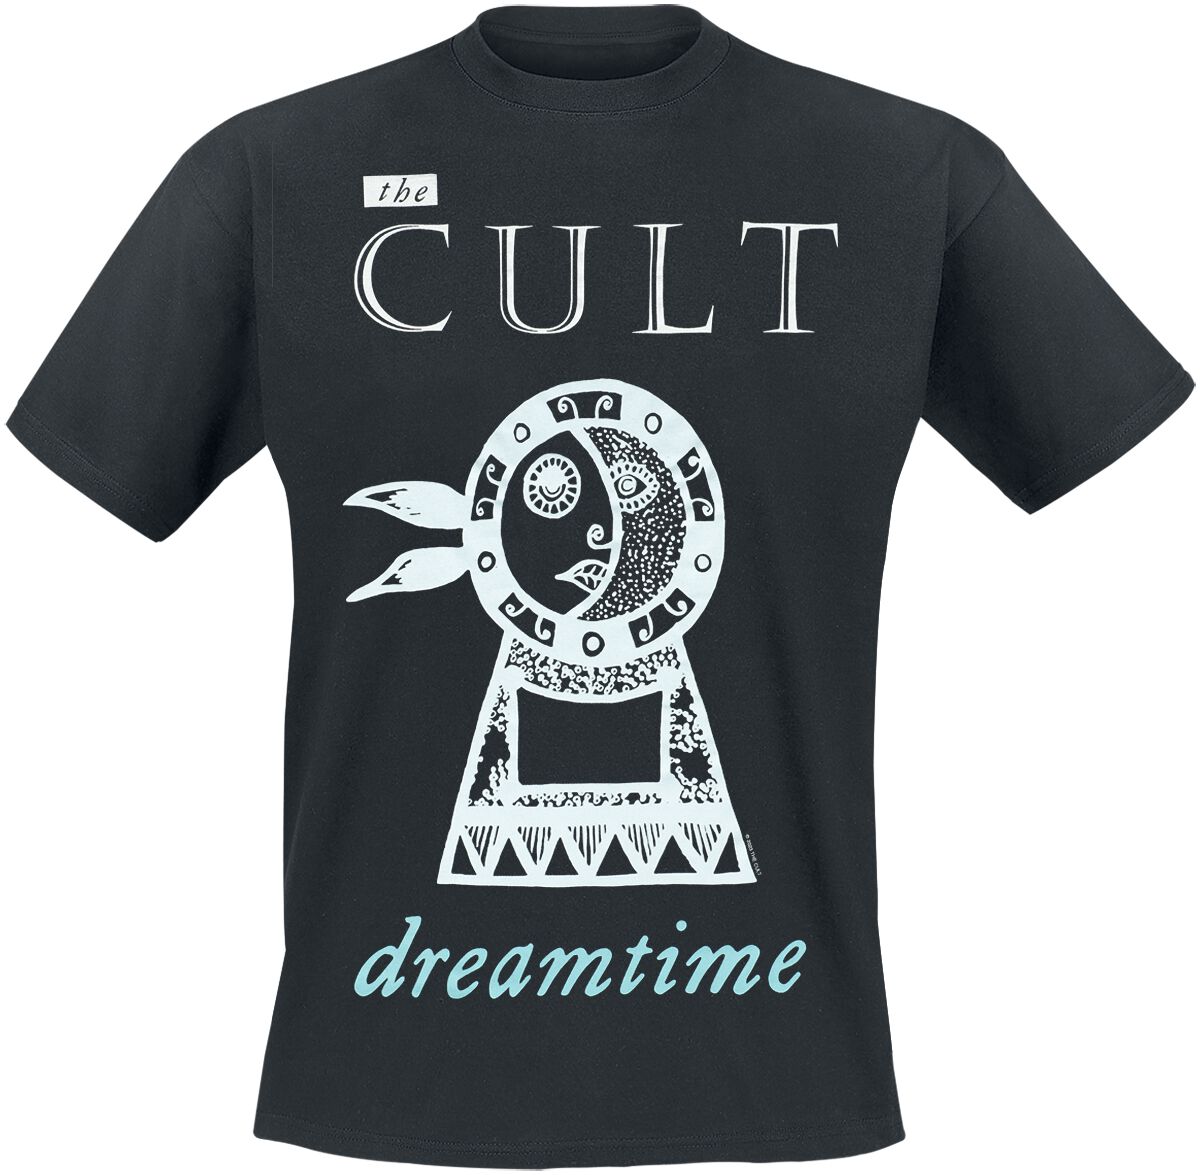 The Cult T-Shirt - Dreamtime - S bis 4XL - für Männer - Größe XL - schwarz  - Lizenziertes Merchandise!